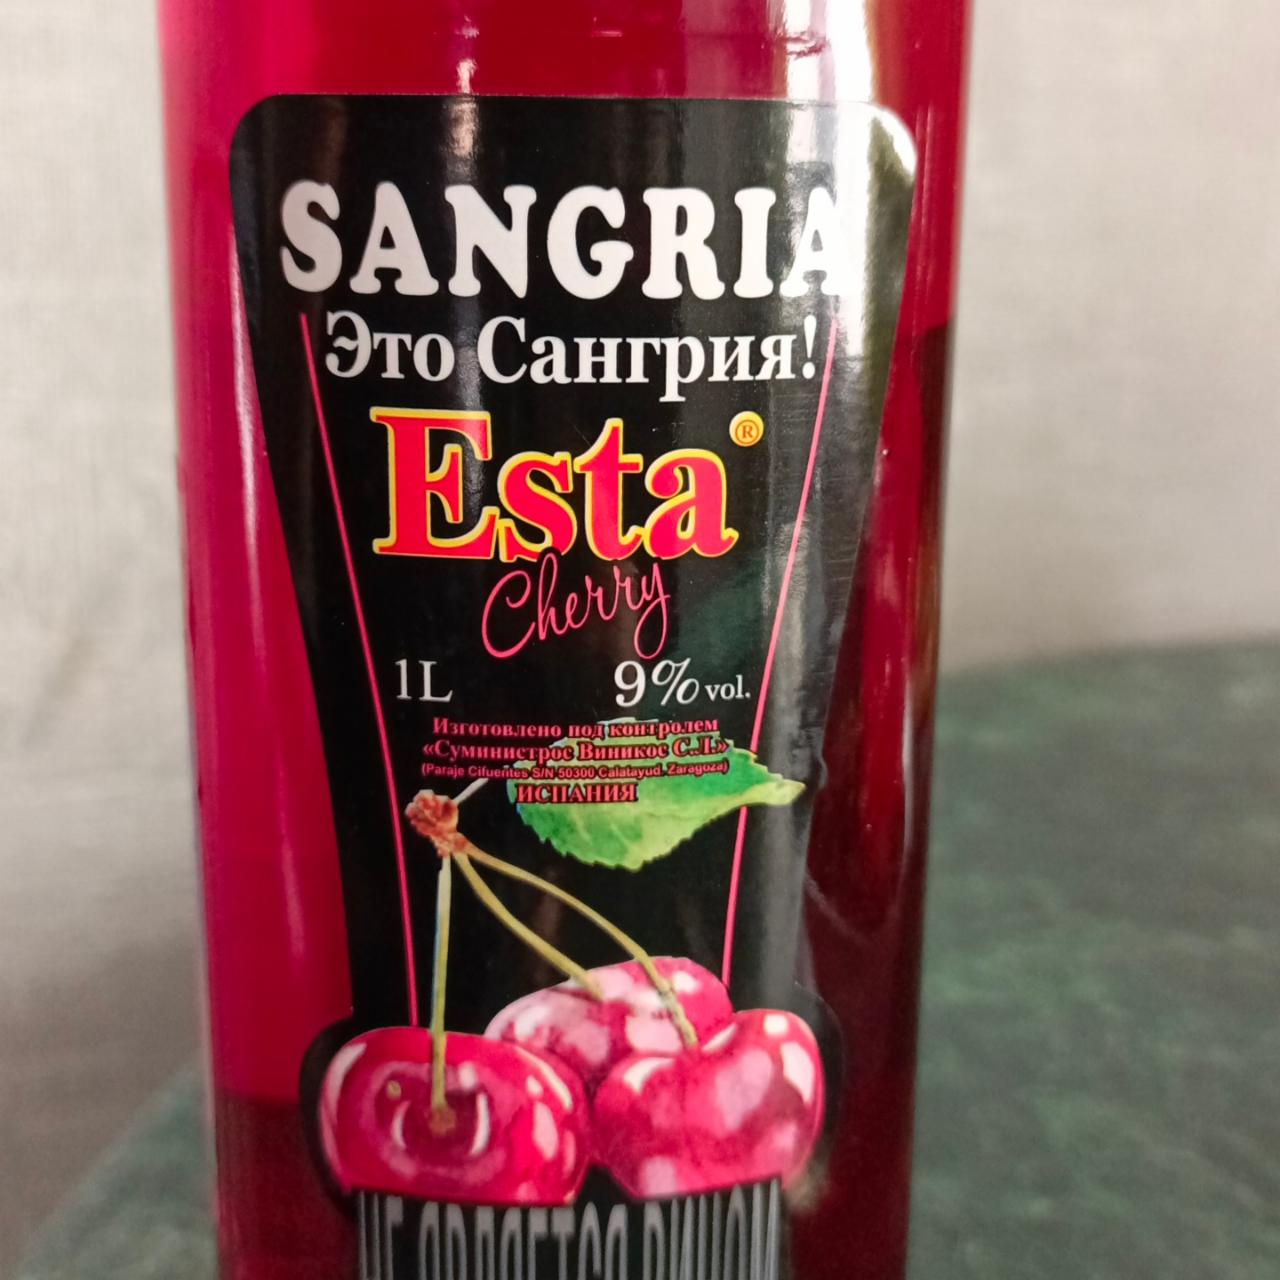 Фото - Плодовый алкогольный напиток сладкий Сангрия Эста со вкусом вишни Esta